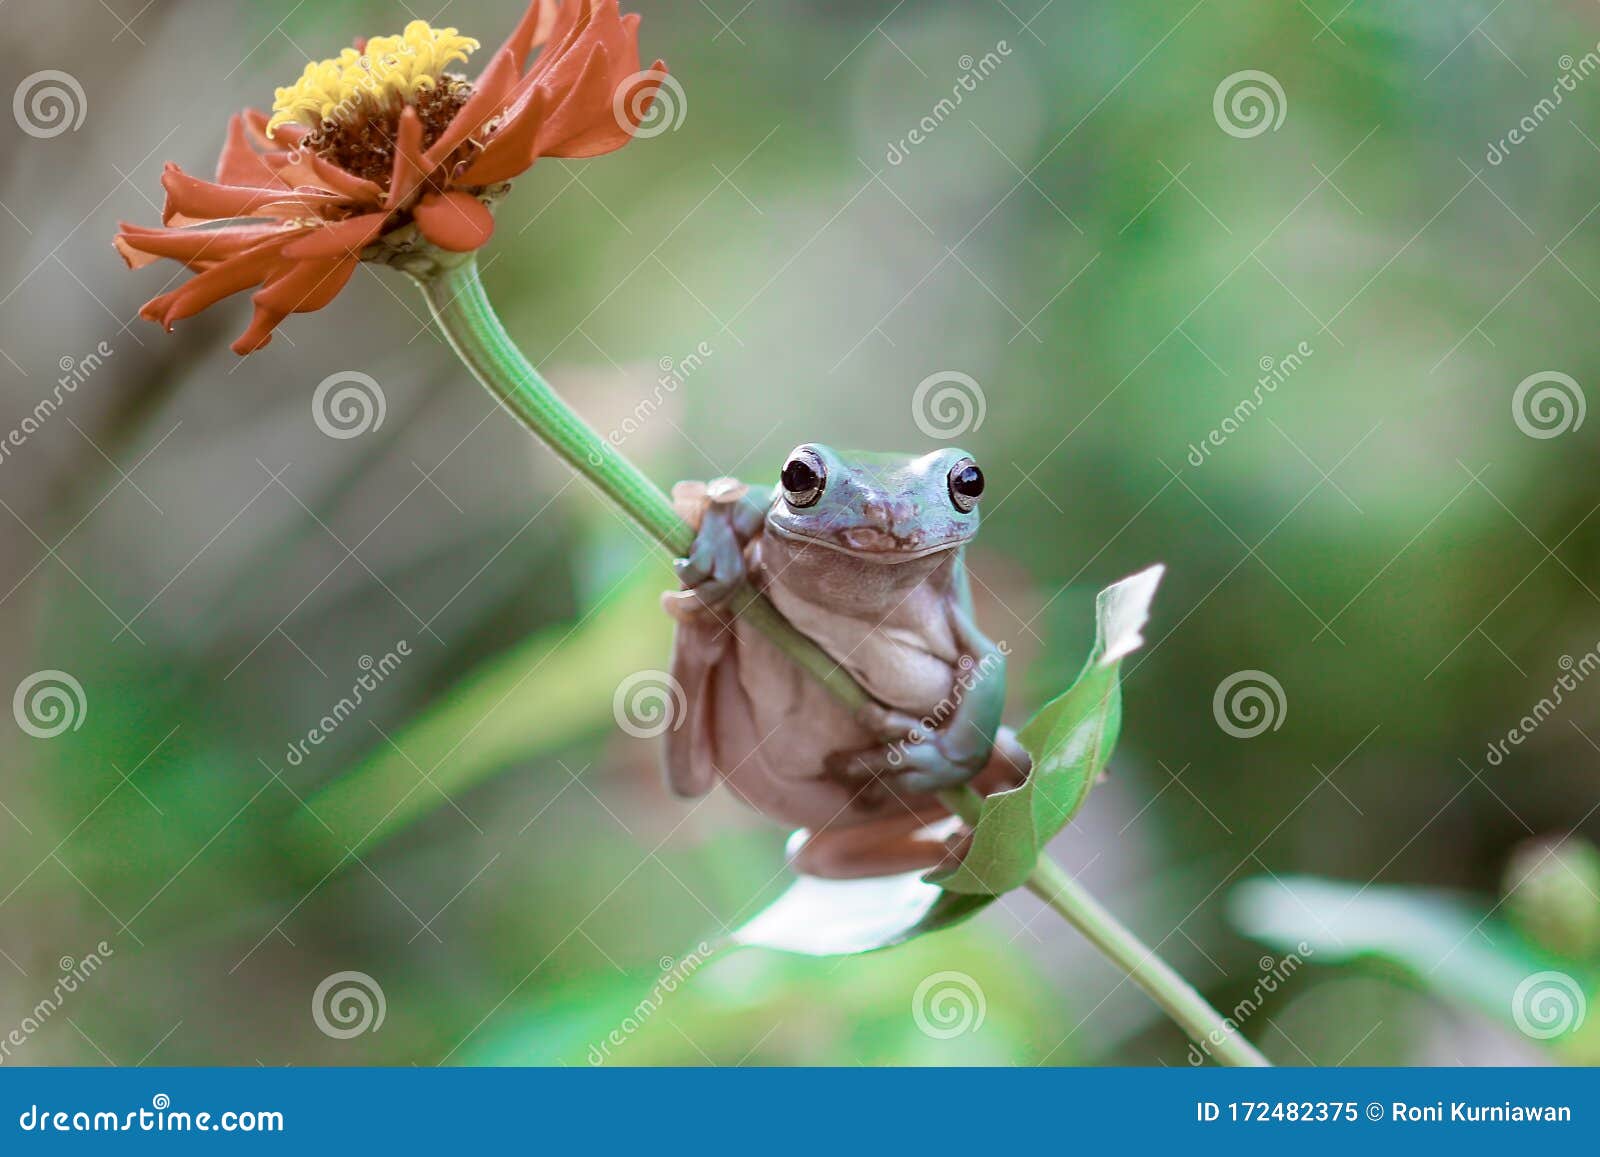 tree frogs, australian tree frogs, dumpy frogs on flowers